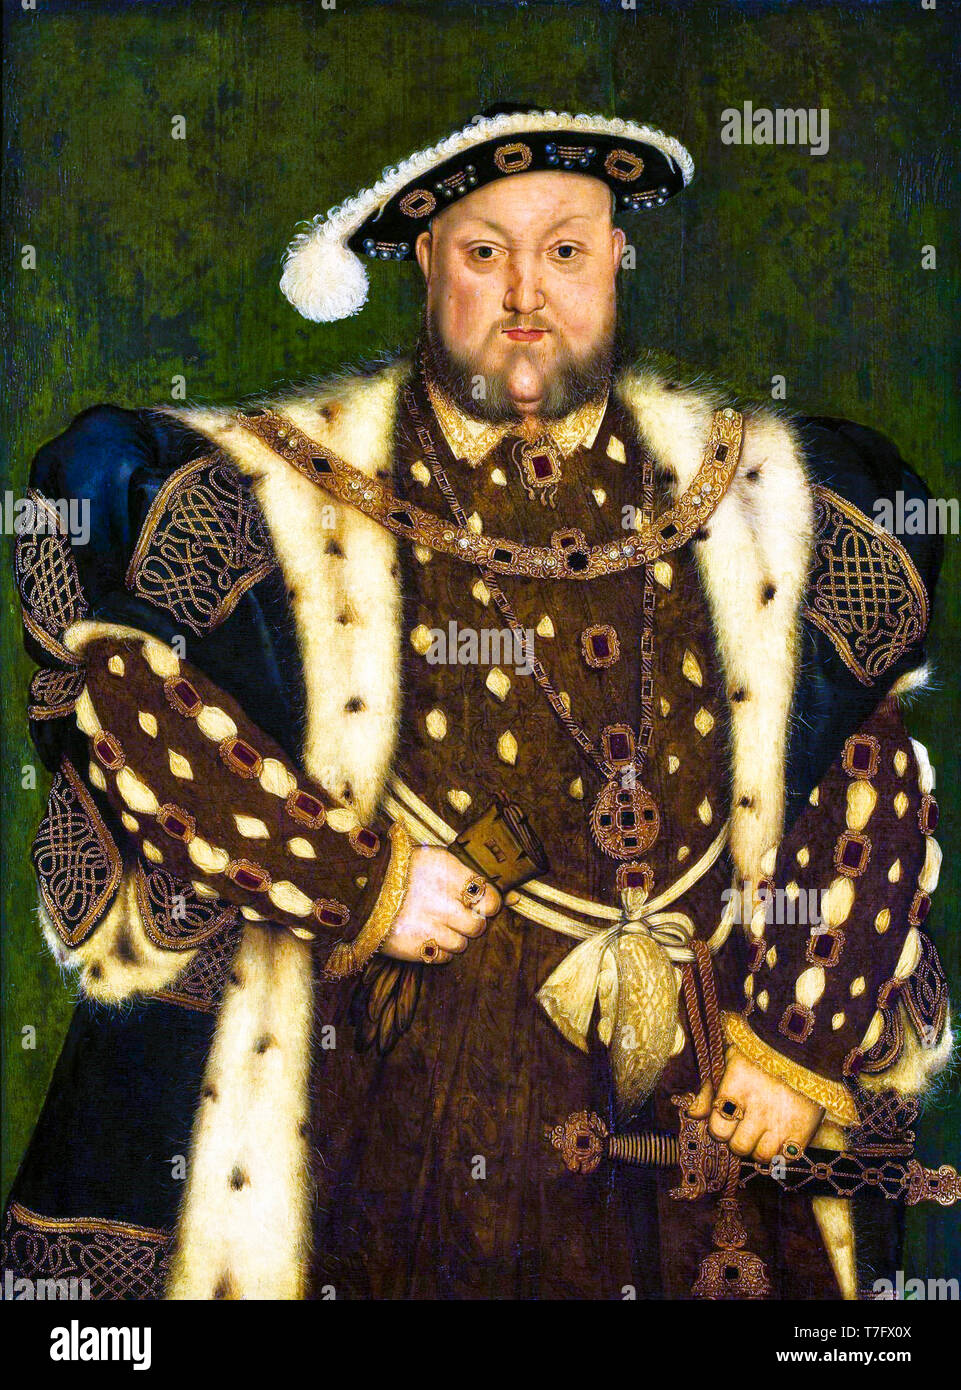 Rey Enrique VIII Retrato de Enrique VIII de Inglaterra (1491-1547), atribuido a Lucas Horenbout, Taller de Hans Holbein, circa 1540s Foto de stock